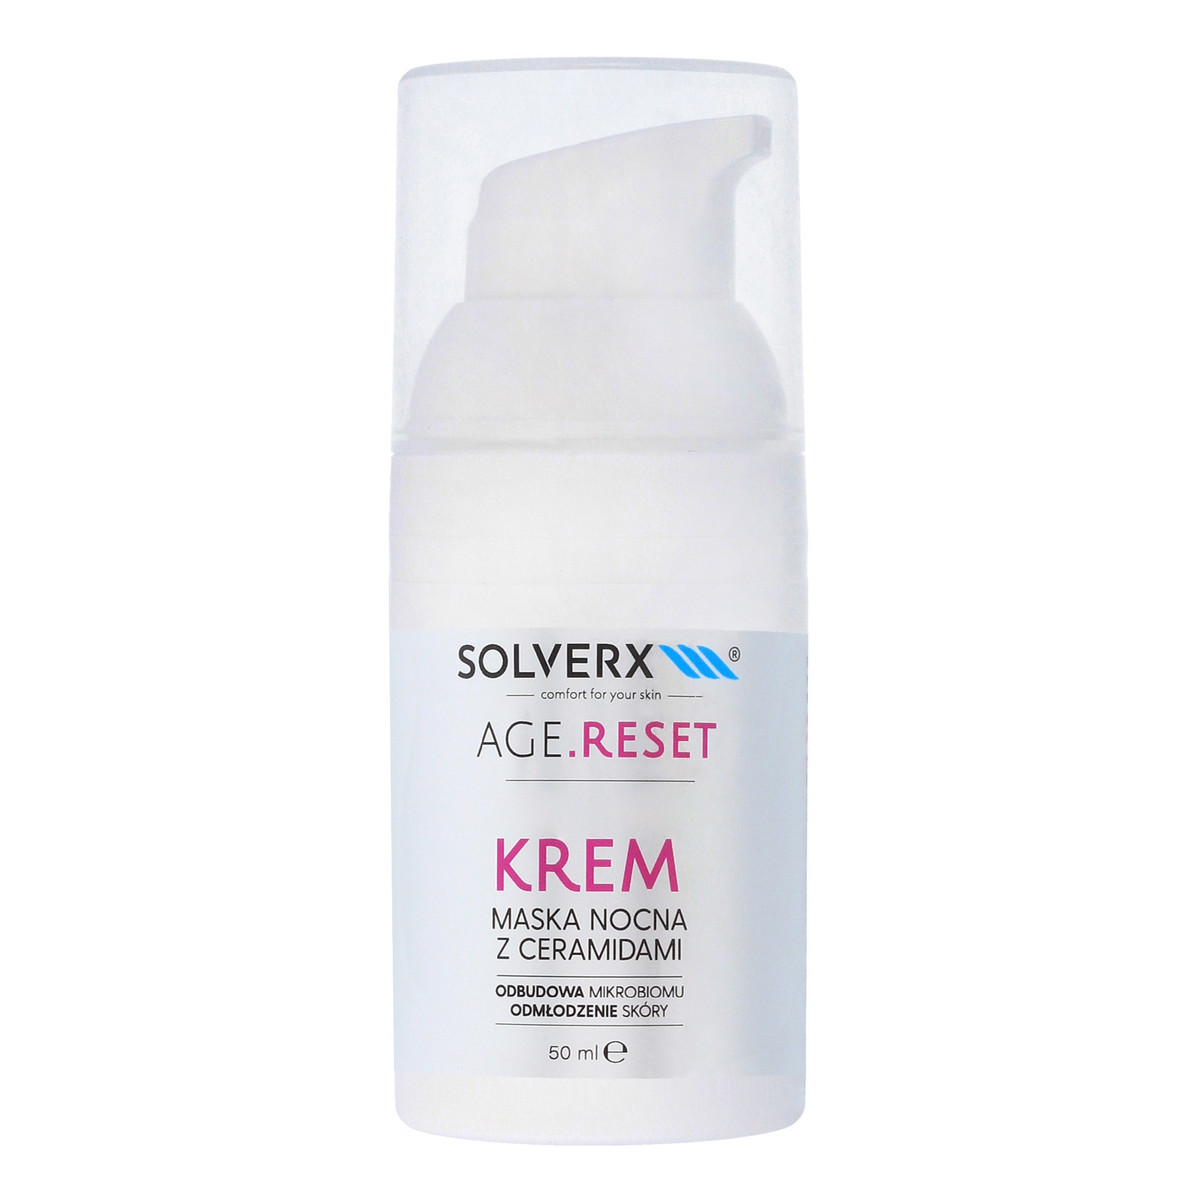 Solverx Age.Reset Krem - Maska nocna do twarzy Odbudowa Mikrobiomu & Wygładzenie Skóry 50ml